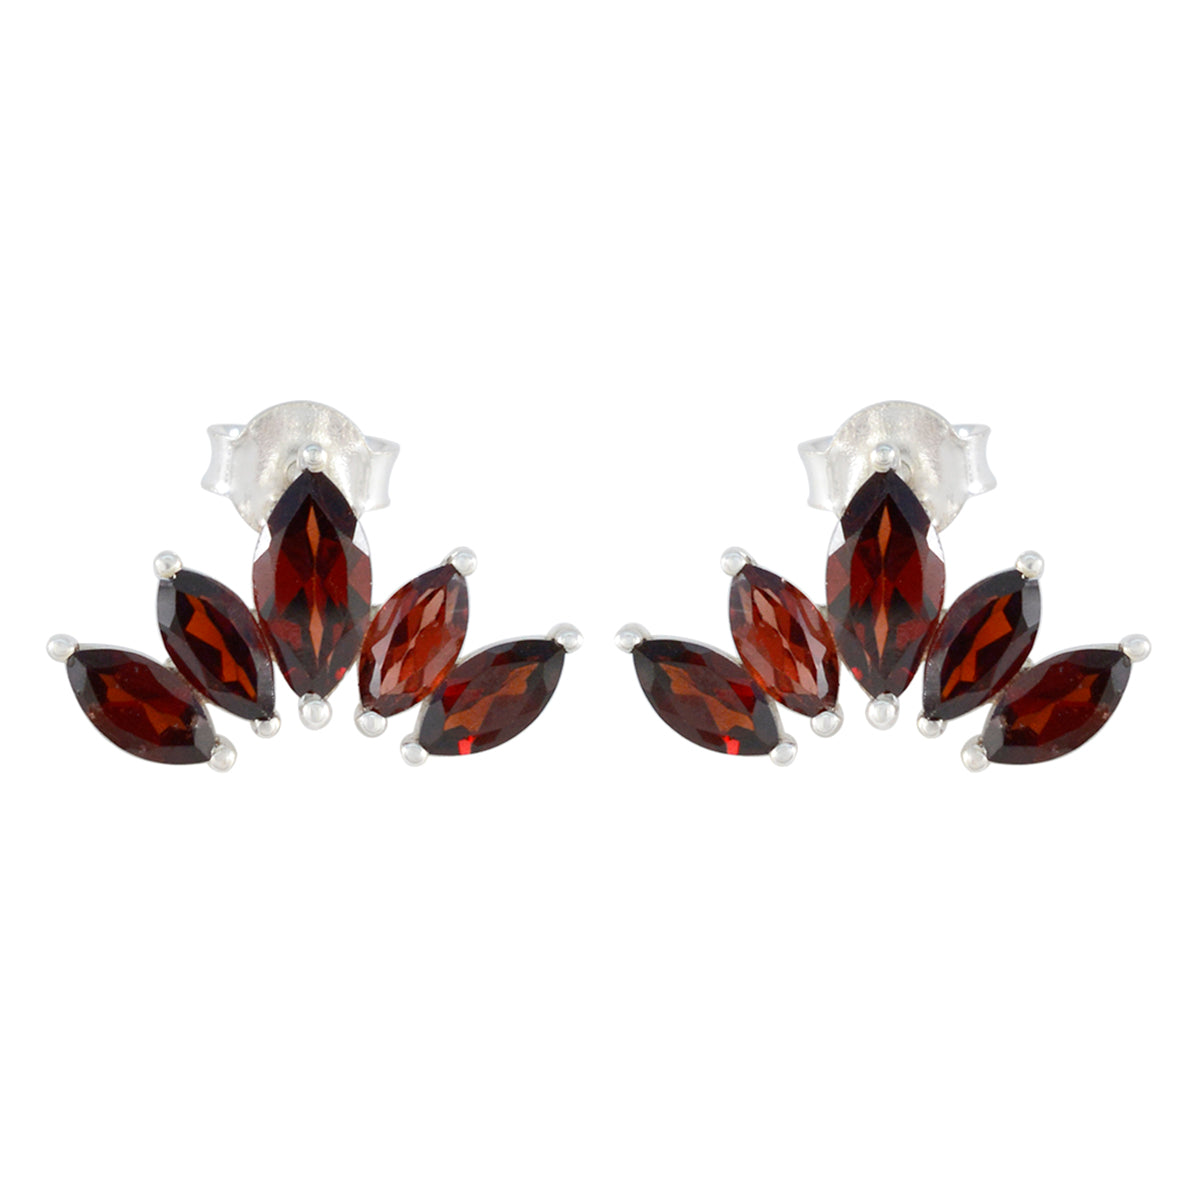 Riyo Irresistible Sterling Silver Earring For Demoiselle Garnet Earring Bezel Setting Red Earring Stud Earring